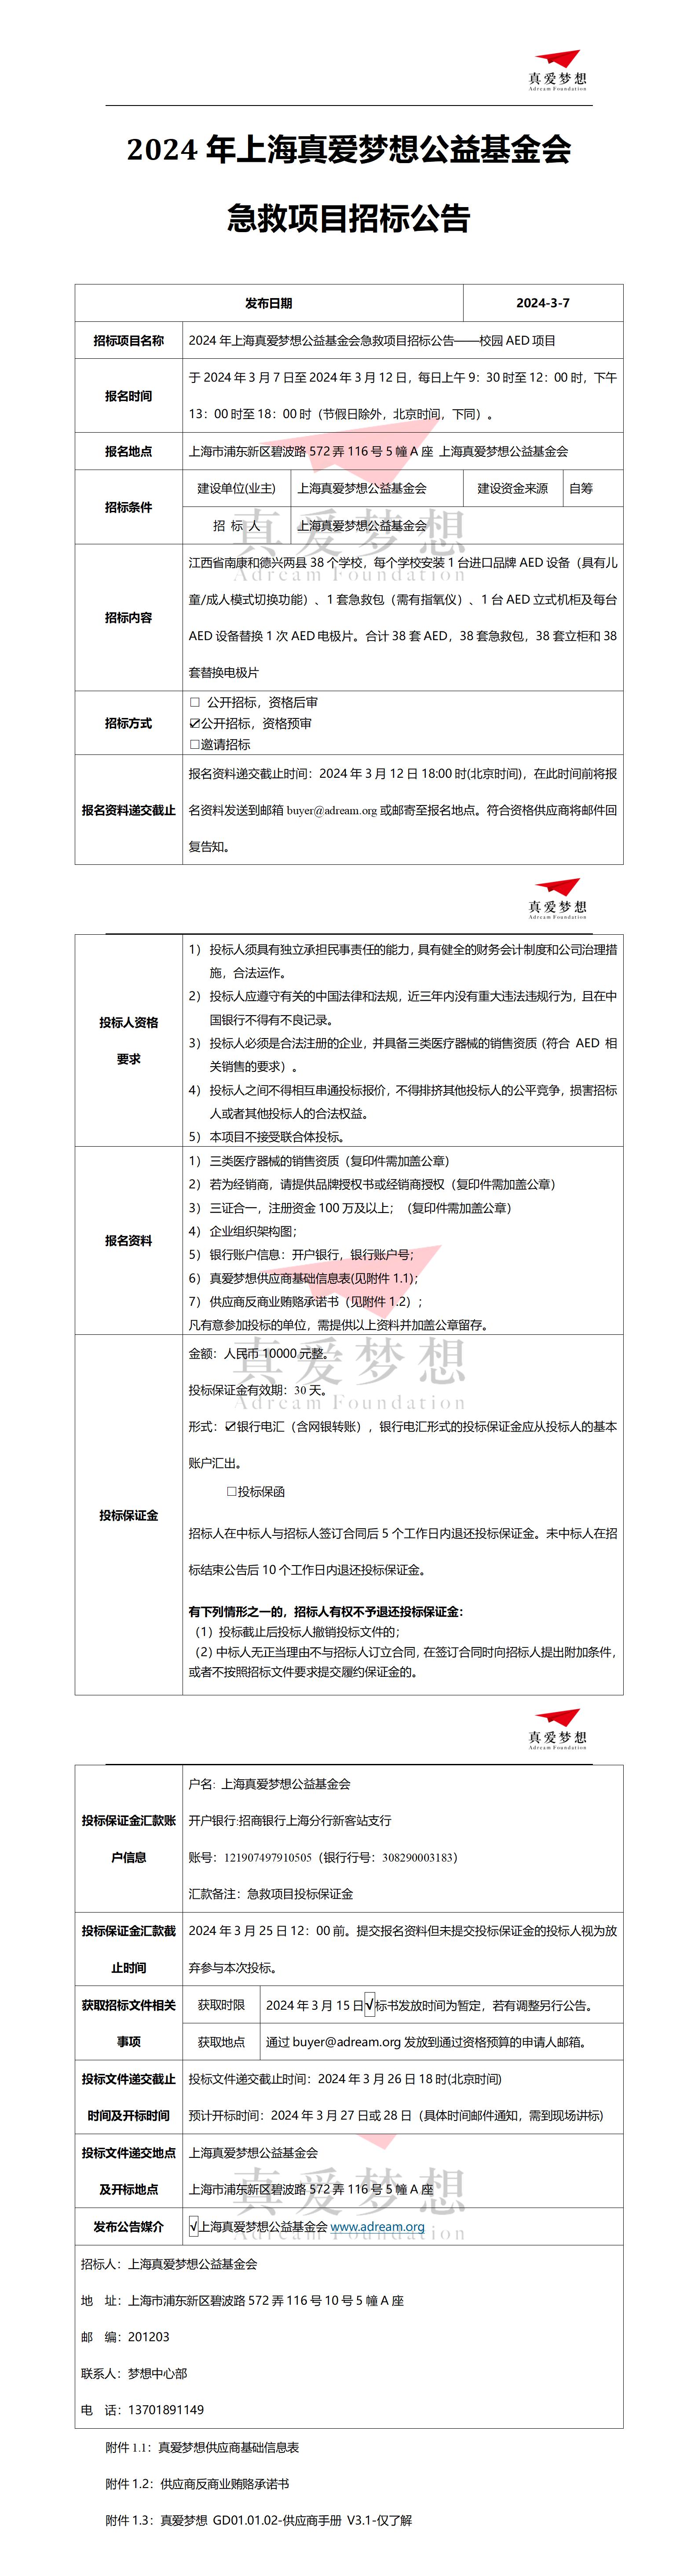 2024年上海真爱梦想公益基金会急救项目招标公告——校园AED项目_01